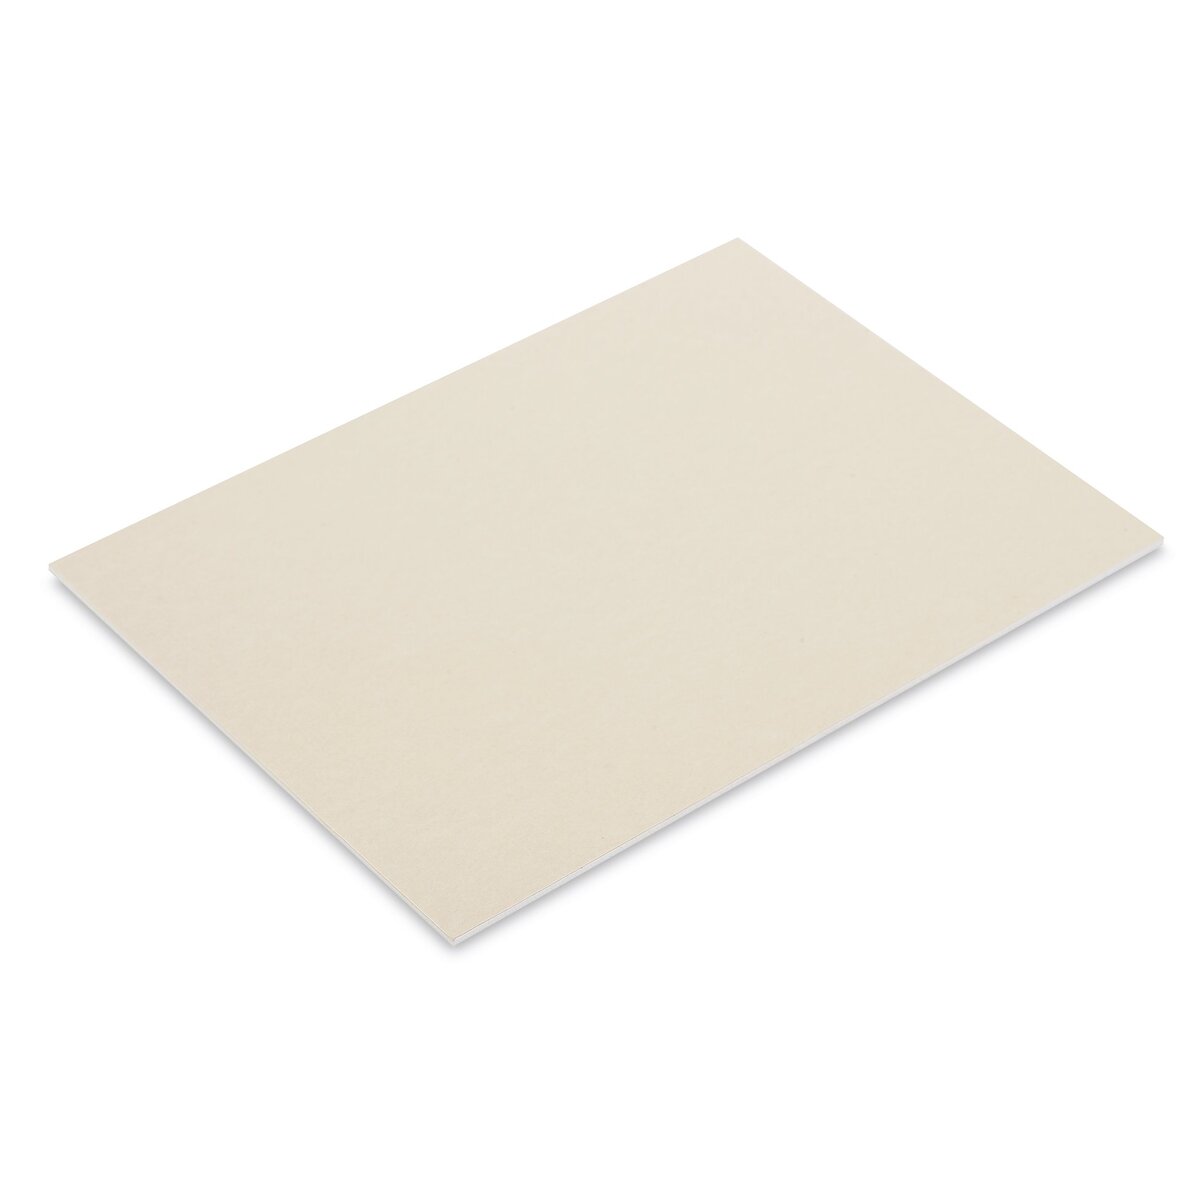  UART Grade 500 Dark Premium Sanded Pastel Paper